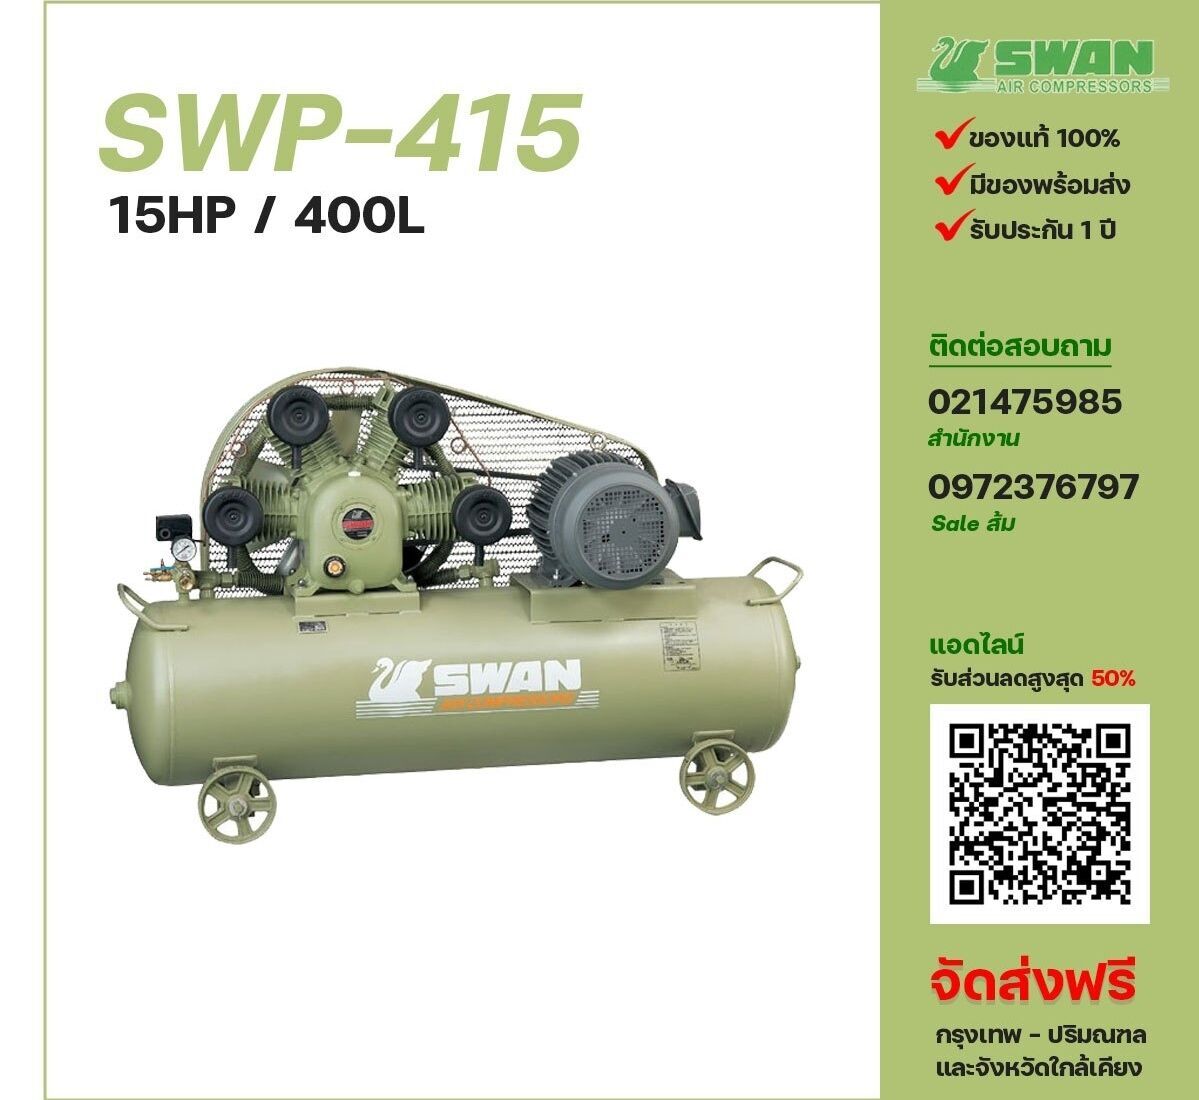 ปั๊มลมสวอน SWAN SWP-415 380V ปั๊มลมลูกสูบ ขนาด 4 สูบ 15 แรงม้า 400 ลิตร SWAN พร้อมมอเตอร์ ไฟ 380V ส่งฟรี กรุงเทพฯ-ปริมณฑล รับประกัน 1 ปี
